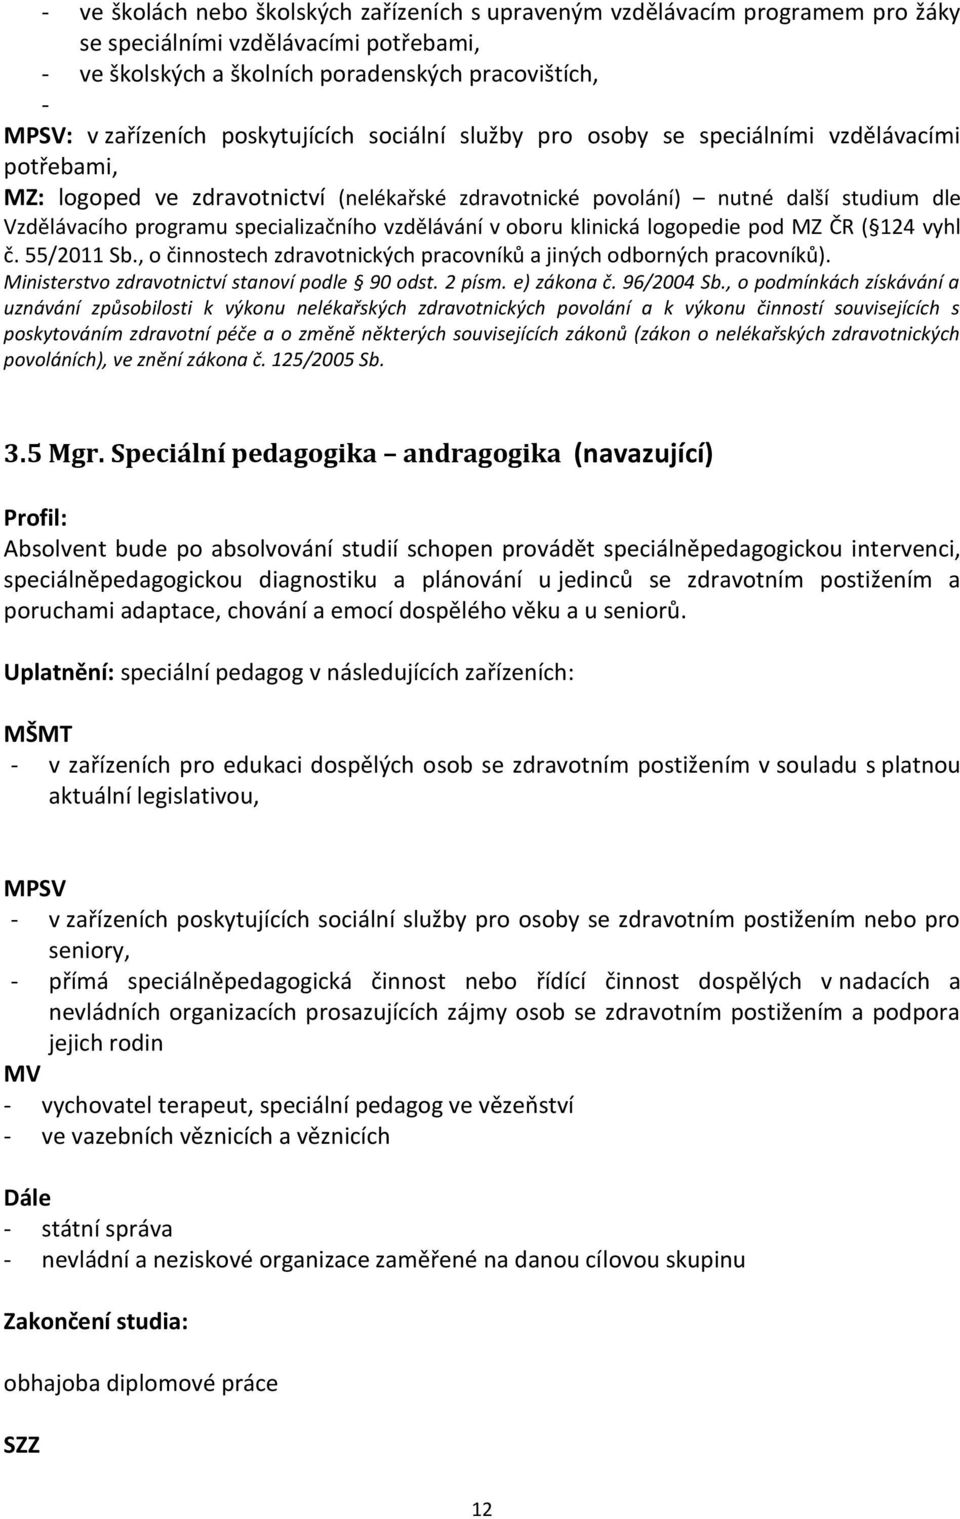 specializačního vzdělávání v oboru klinická logopedie pod MZ ČR ( 124 vyhl č. 55/2011 Sb., o činnostech zdravotnických pracovníků a jiných odborných pracovníků).